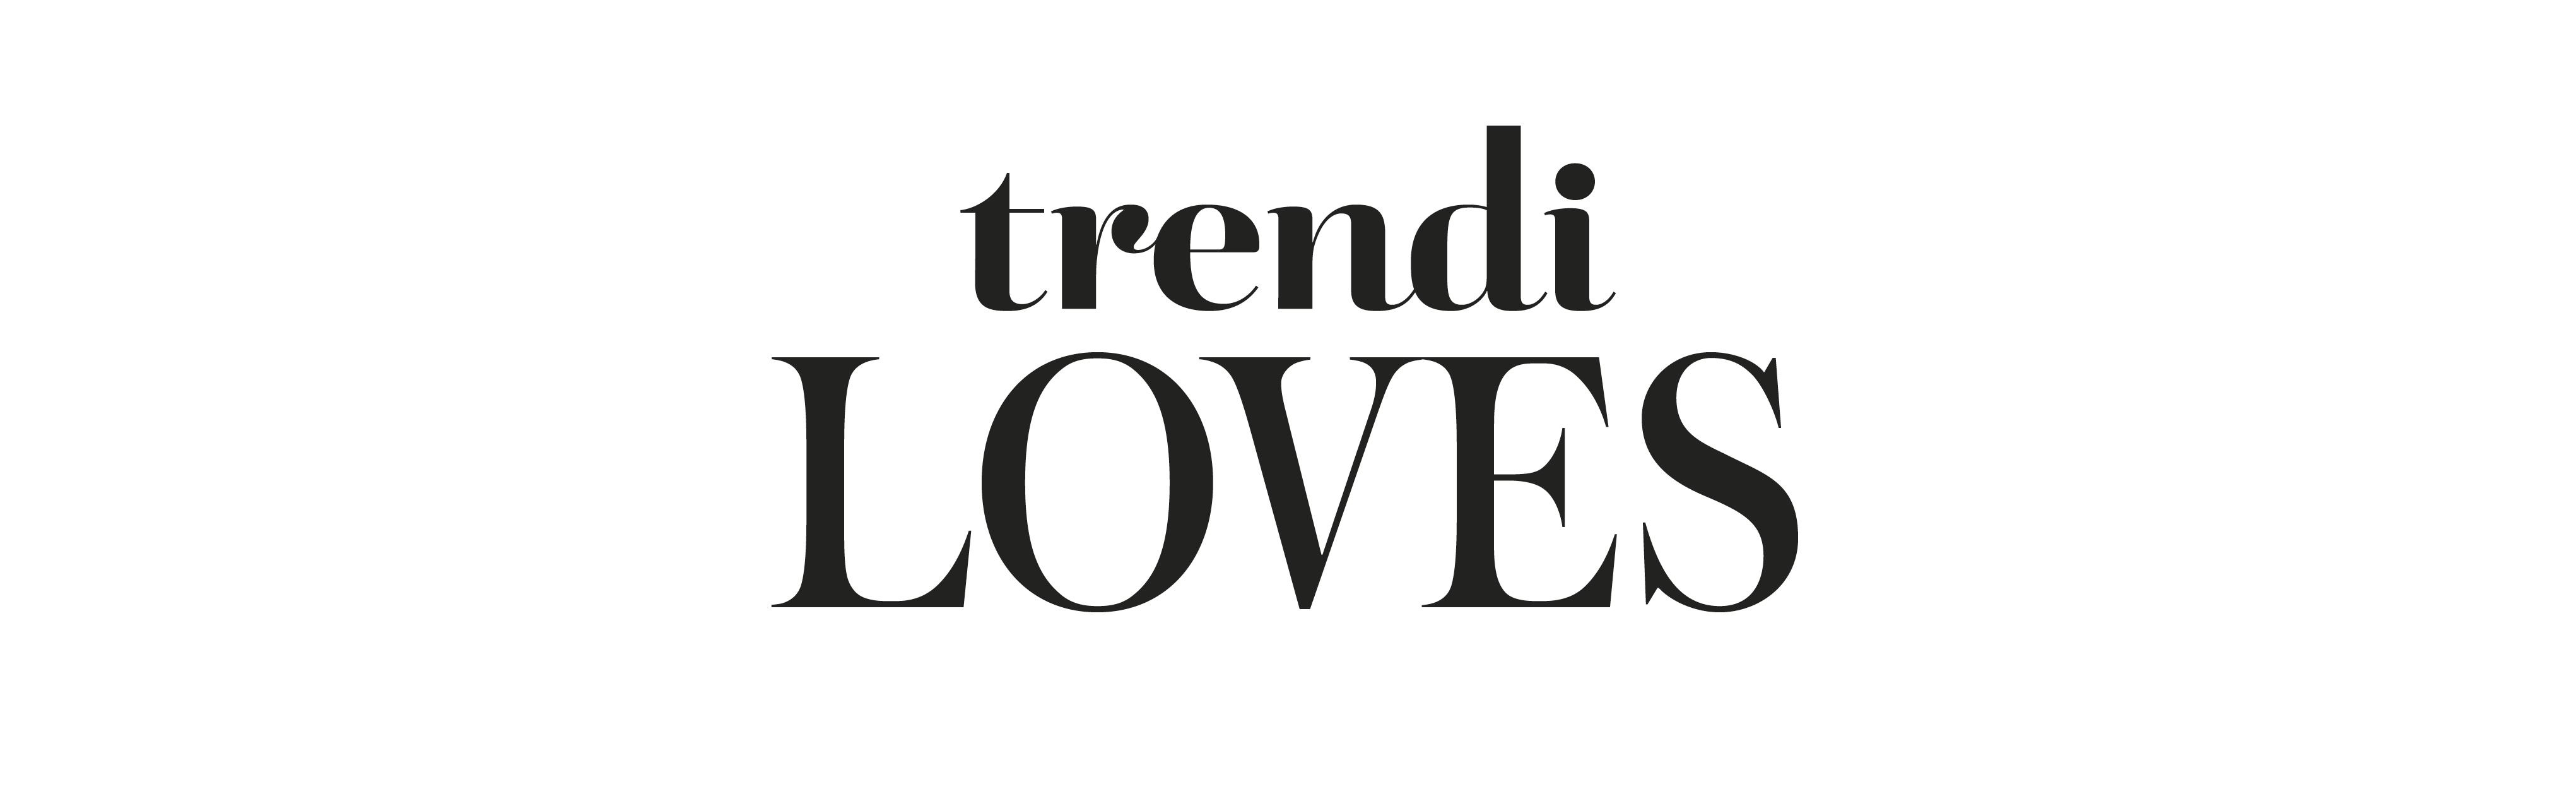 Trendi loves